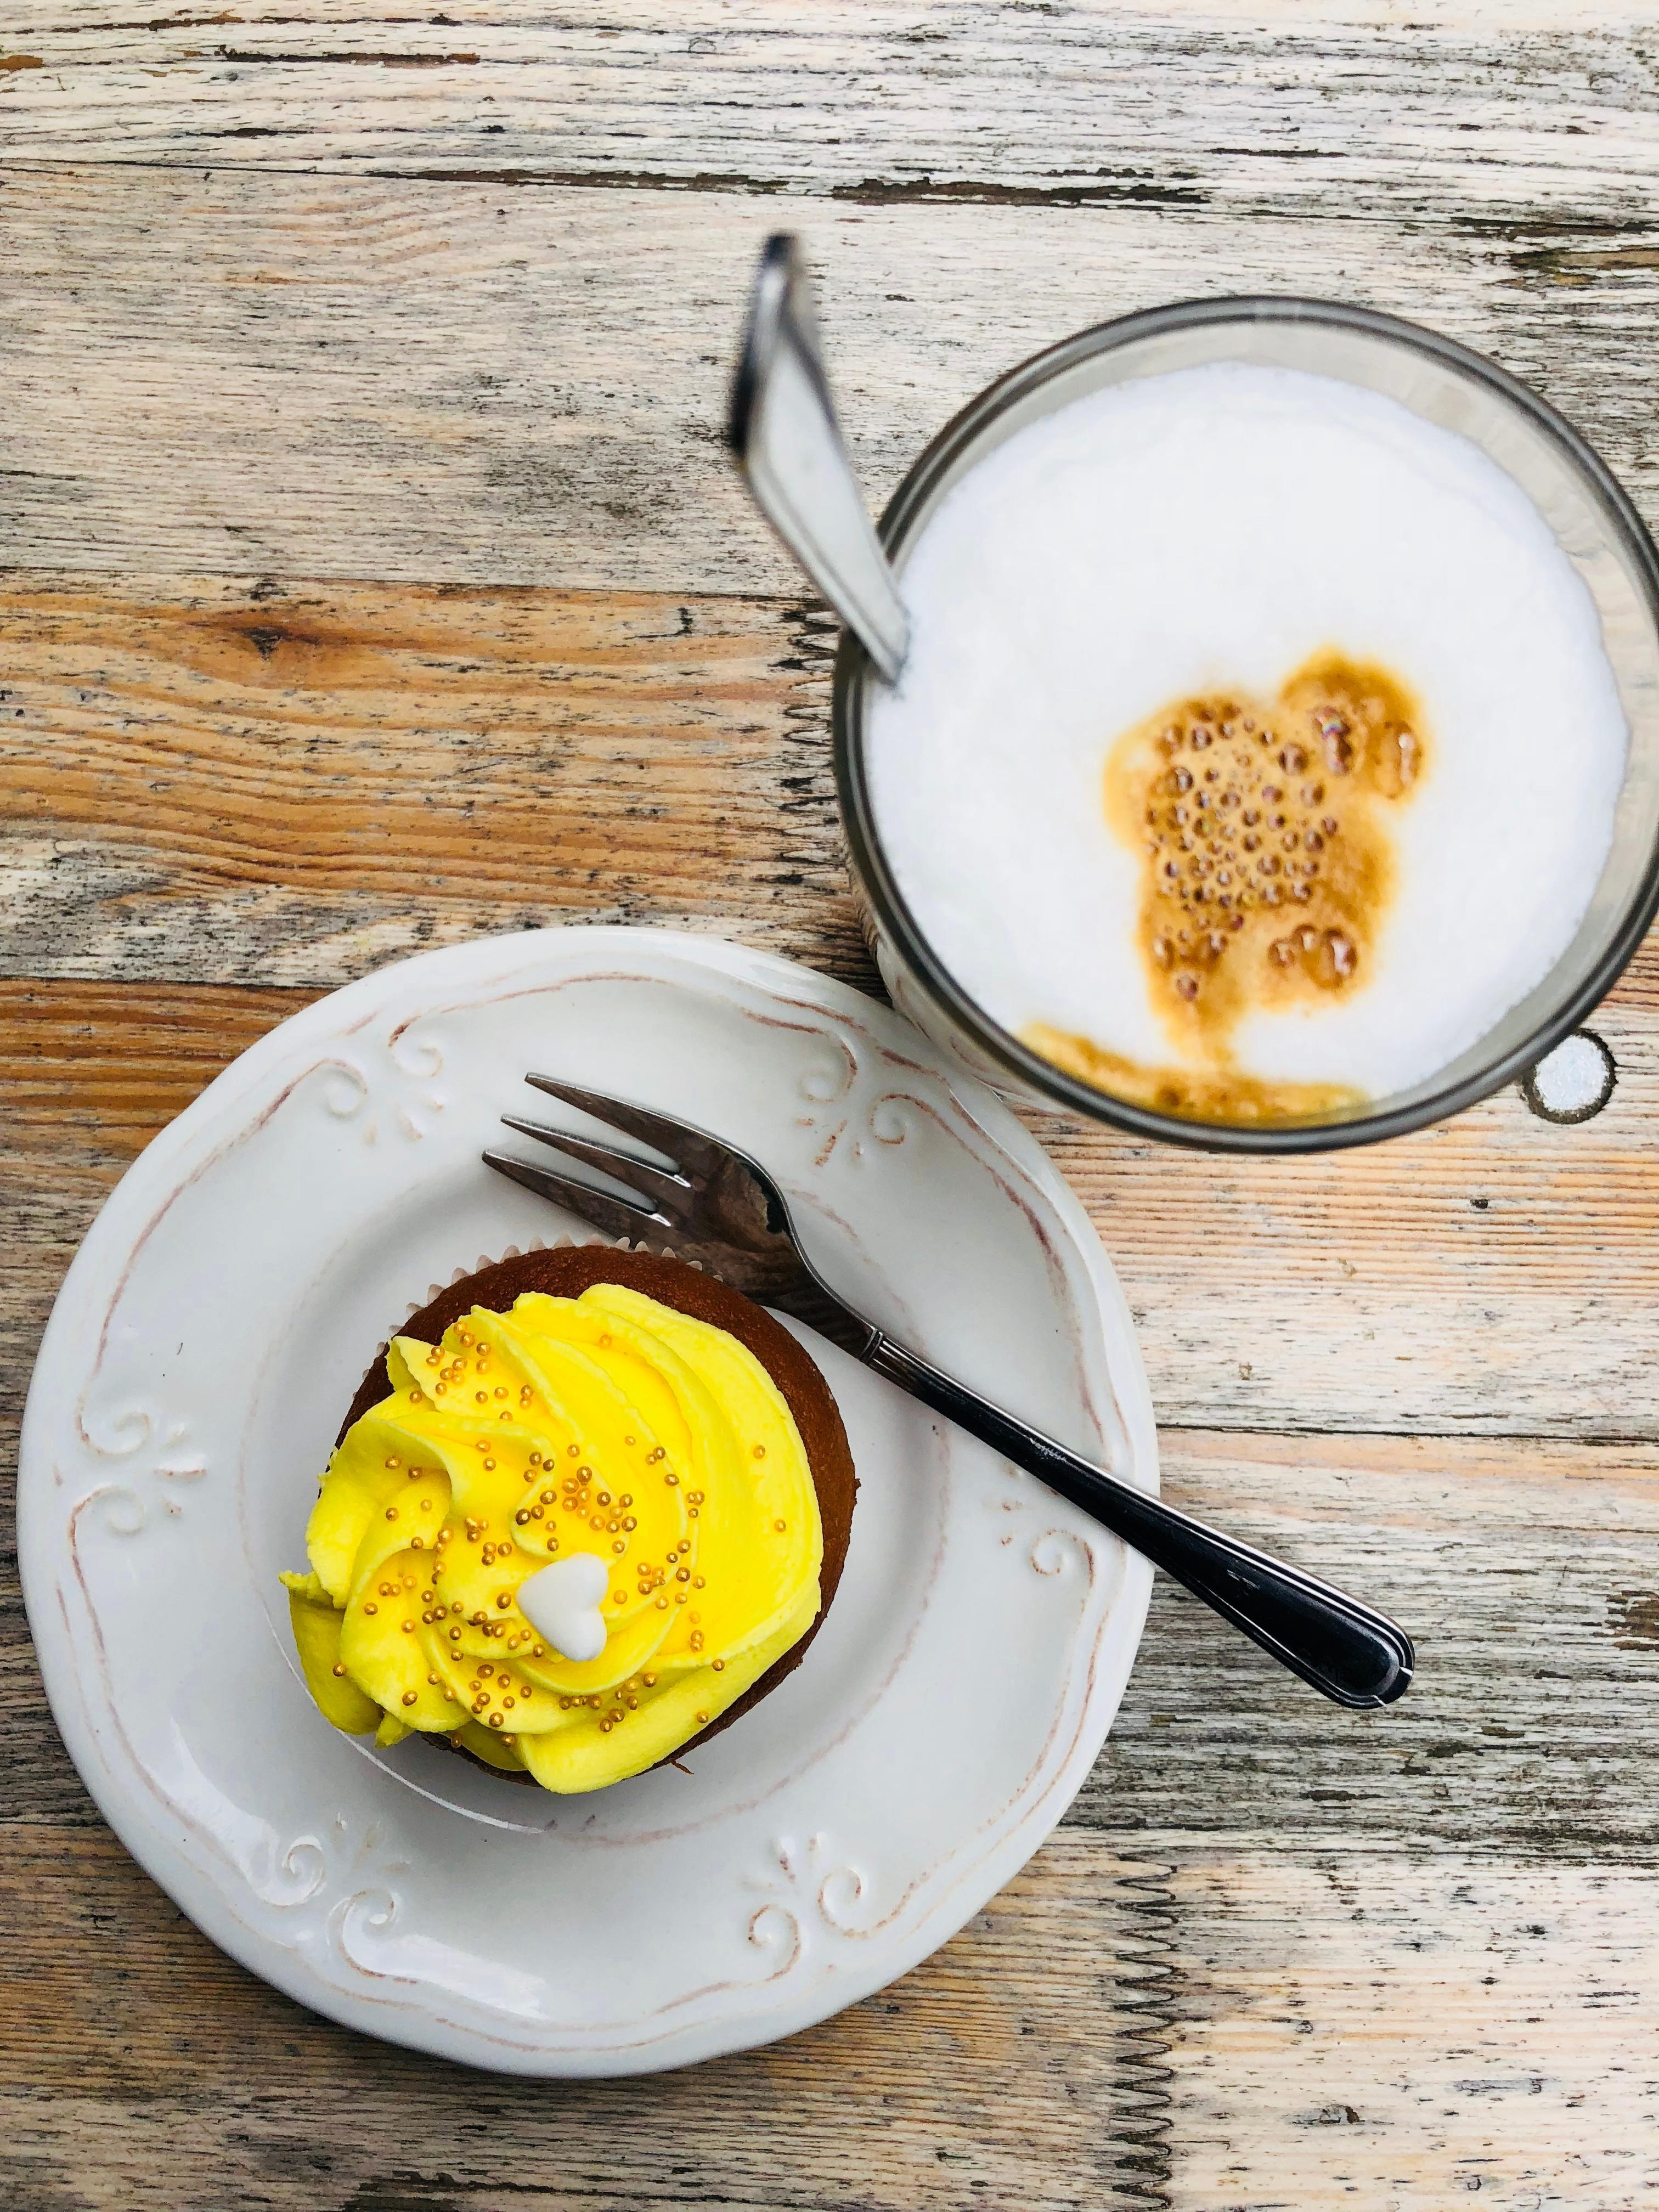 Zeit für einen kleinen Cupcake 😋 #foodlover #wochenende #coffeelover #bunnyandscott #kaffee #cupcake